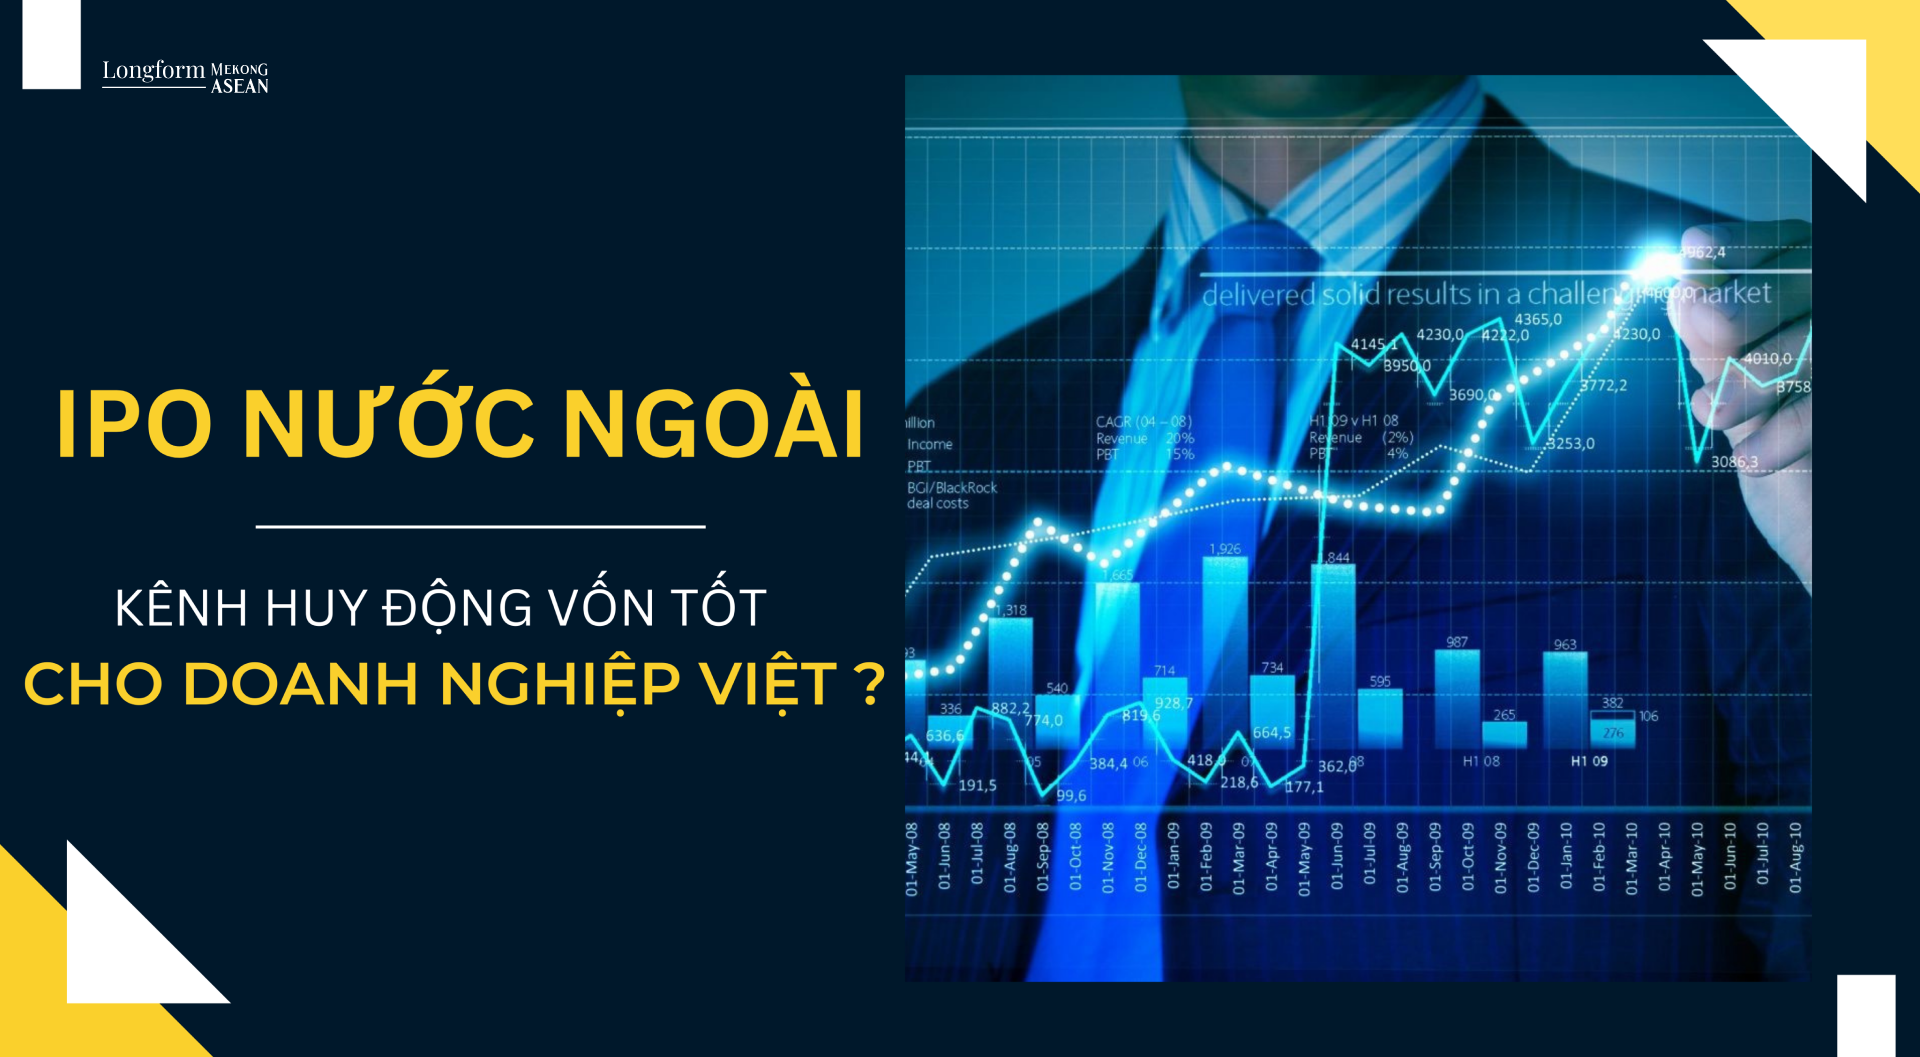 IPO ở nước ngoài có là một kênh huy động vốn tốt cho doanh nghiệp Việt Nam?